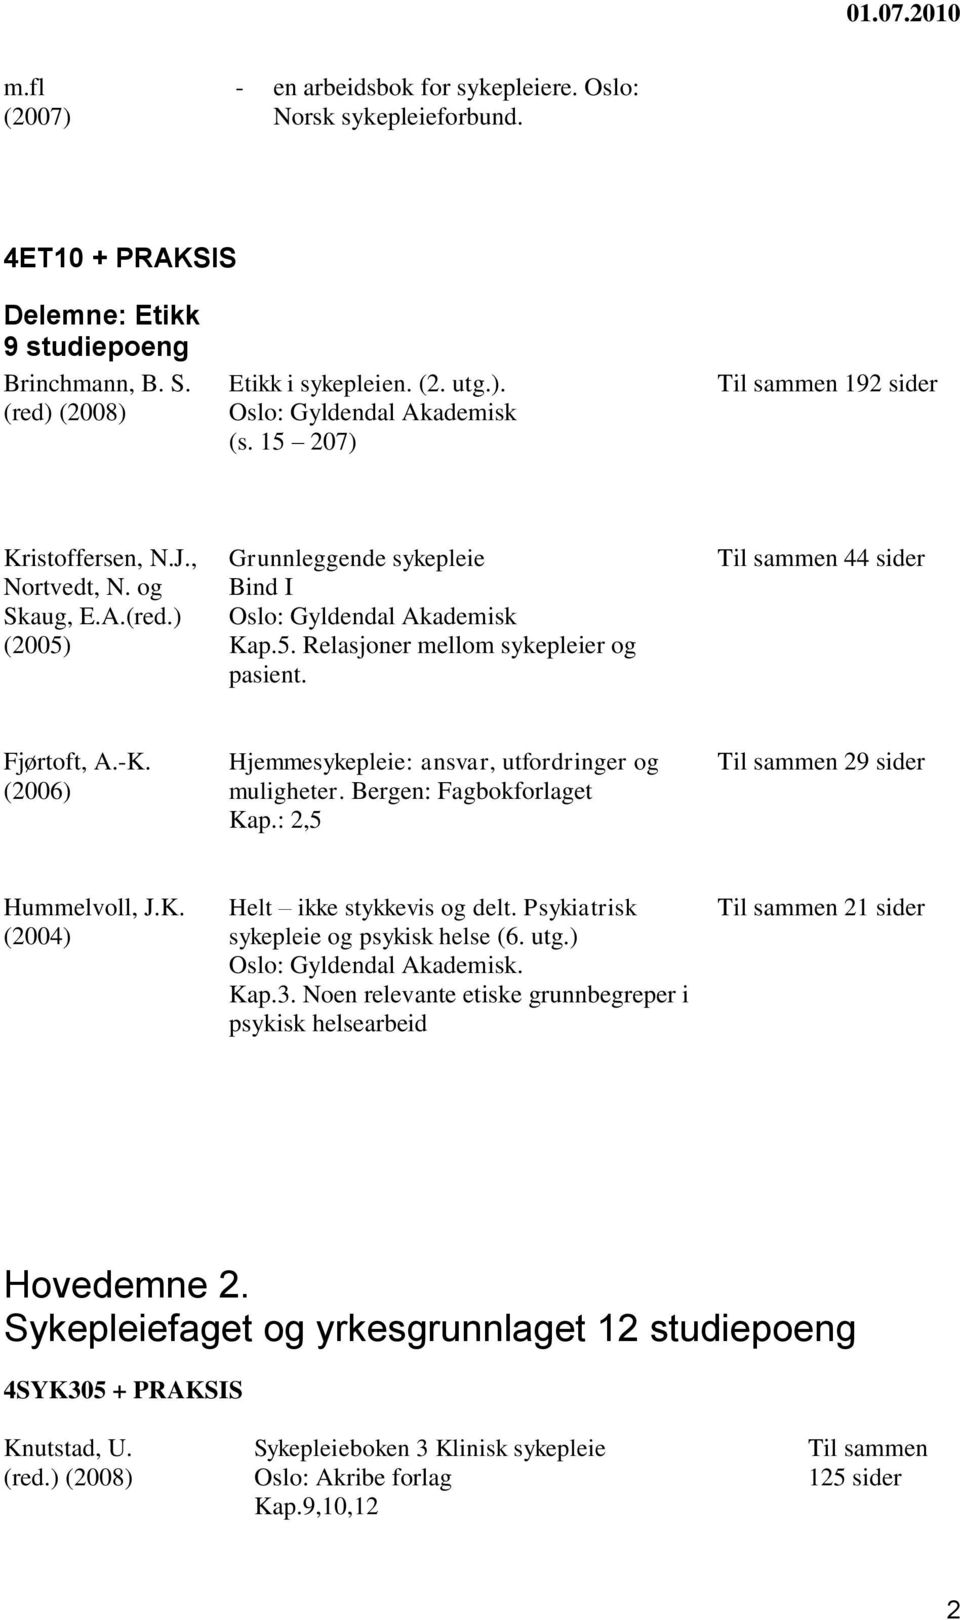 (2006) Hjemmesykepleie: ansvar, utfordringer og muligheter. Bergen: Fagbokforlaget Kap.: 2,5 29 Hummelvoll, J.K. (2004) Helt ikke stykkevis og delt. Psykiatrisk sykepleie og psykisk helse (6. utg.). Kap.3.